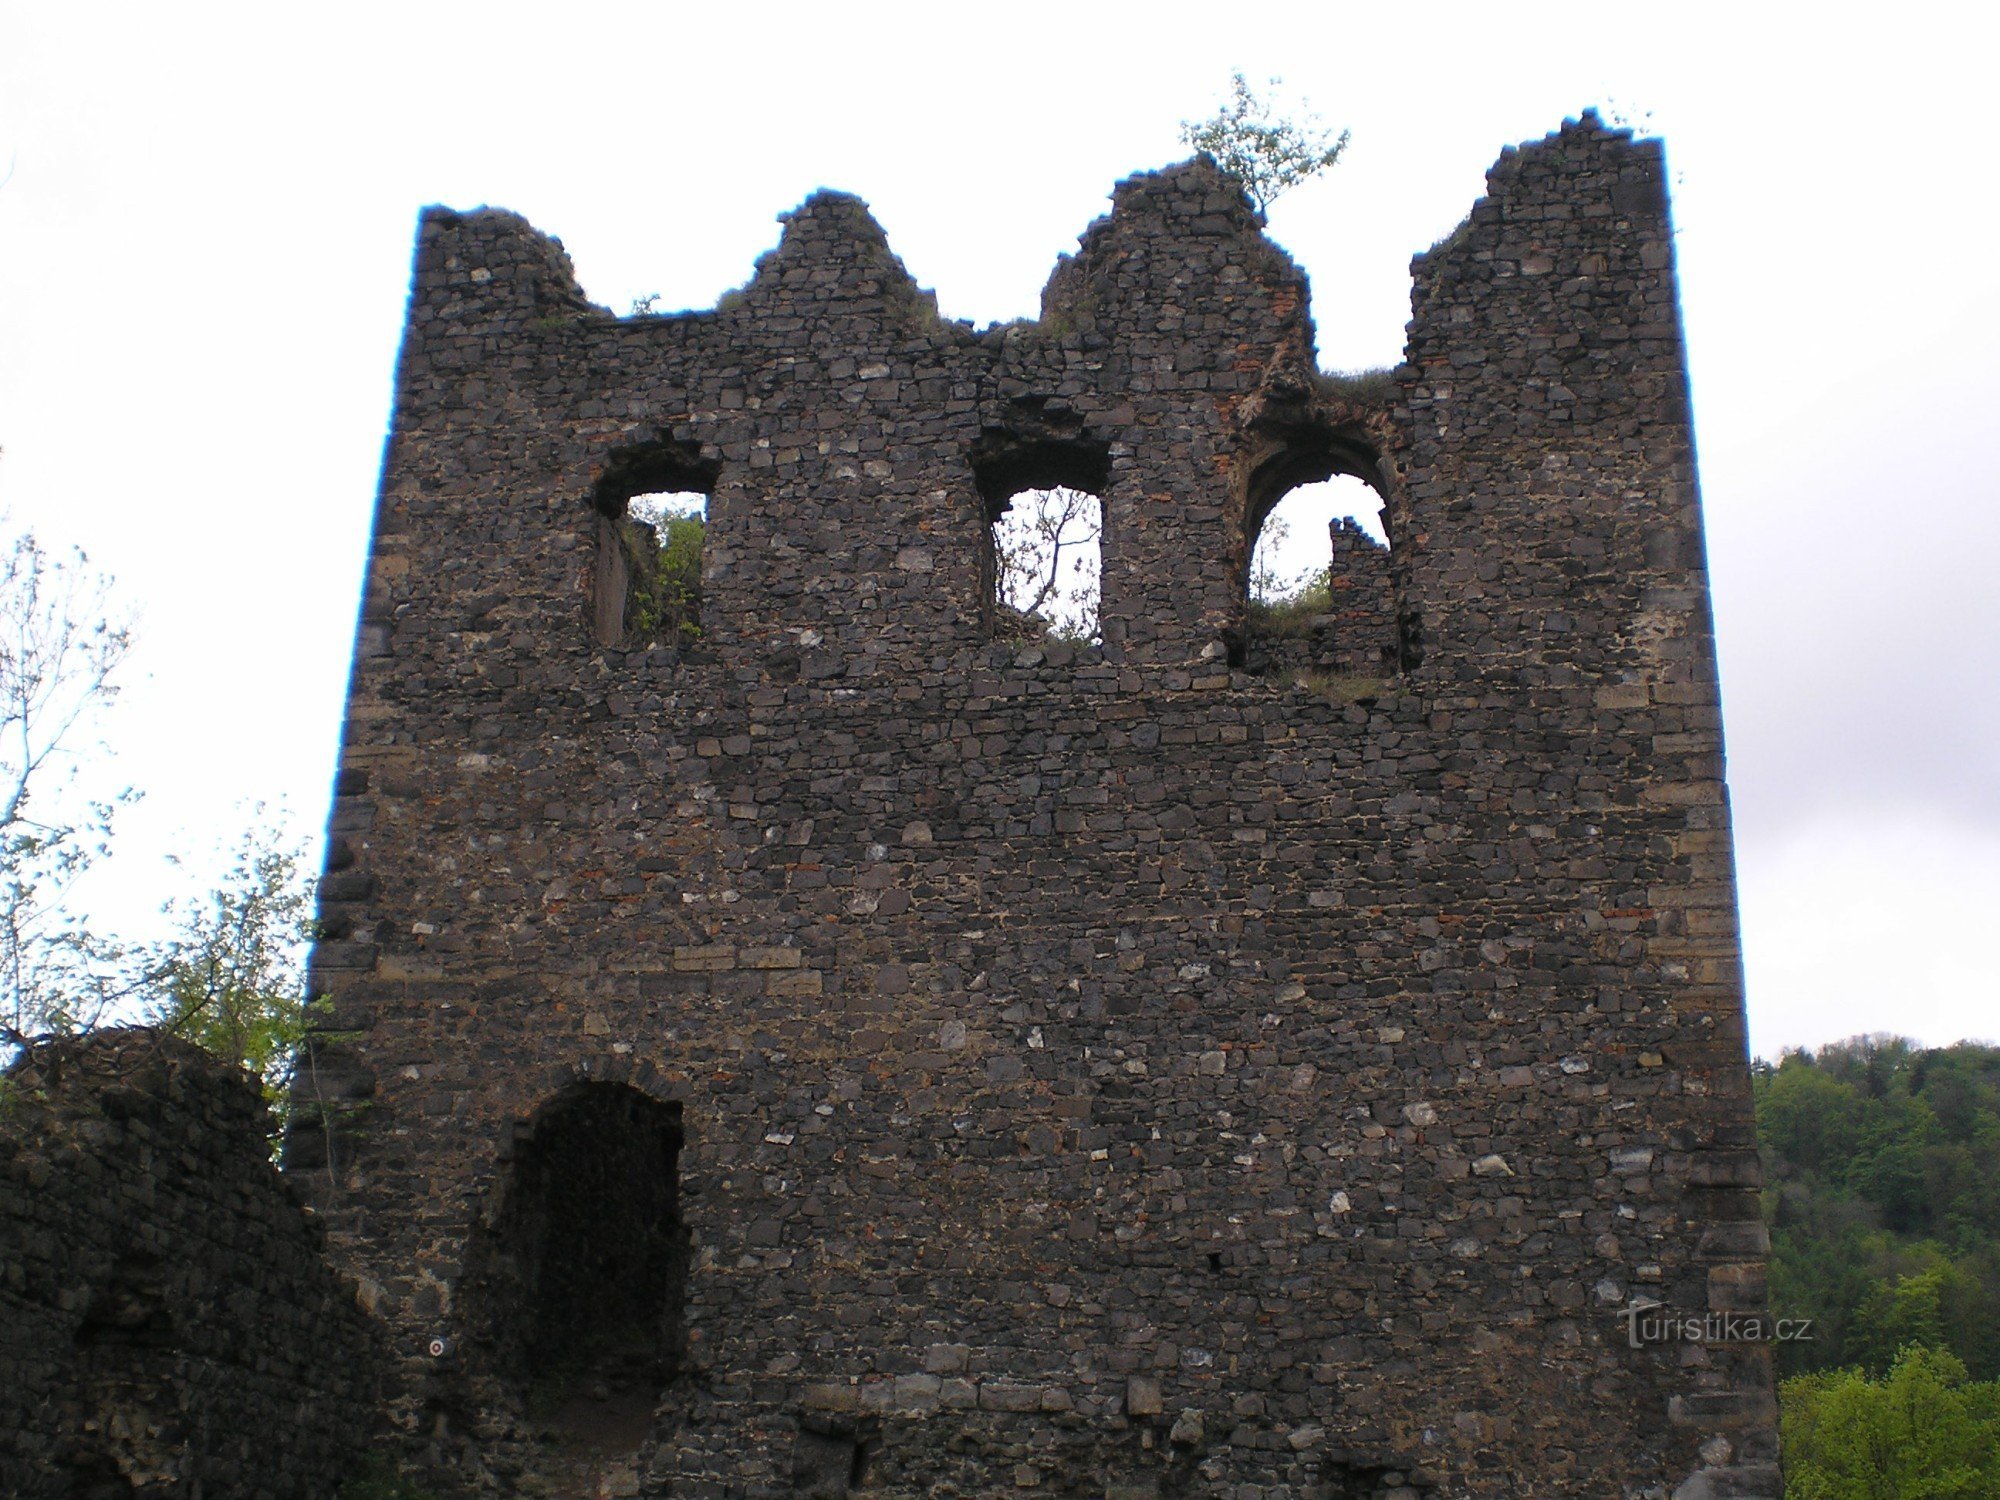 Lestkovske ruševine